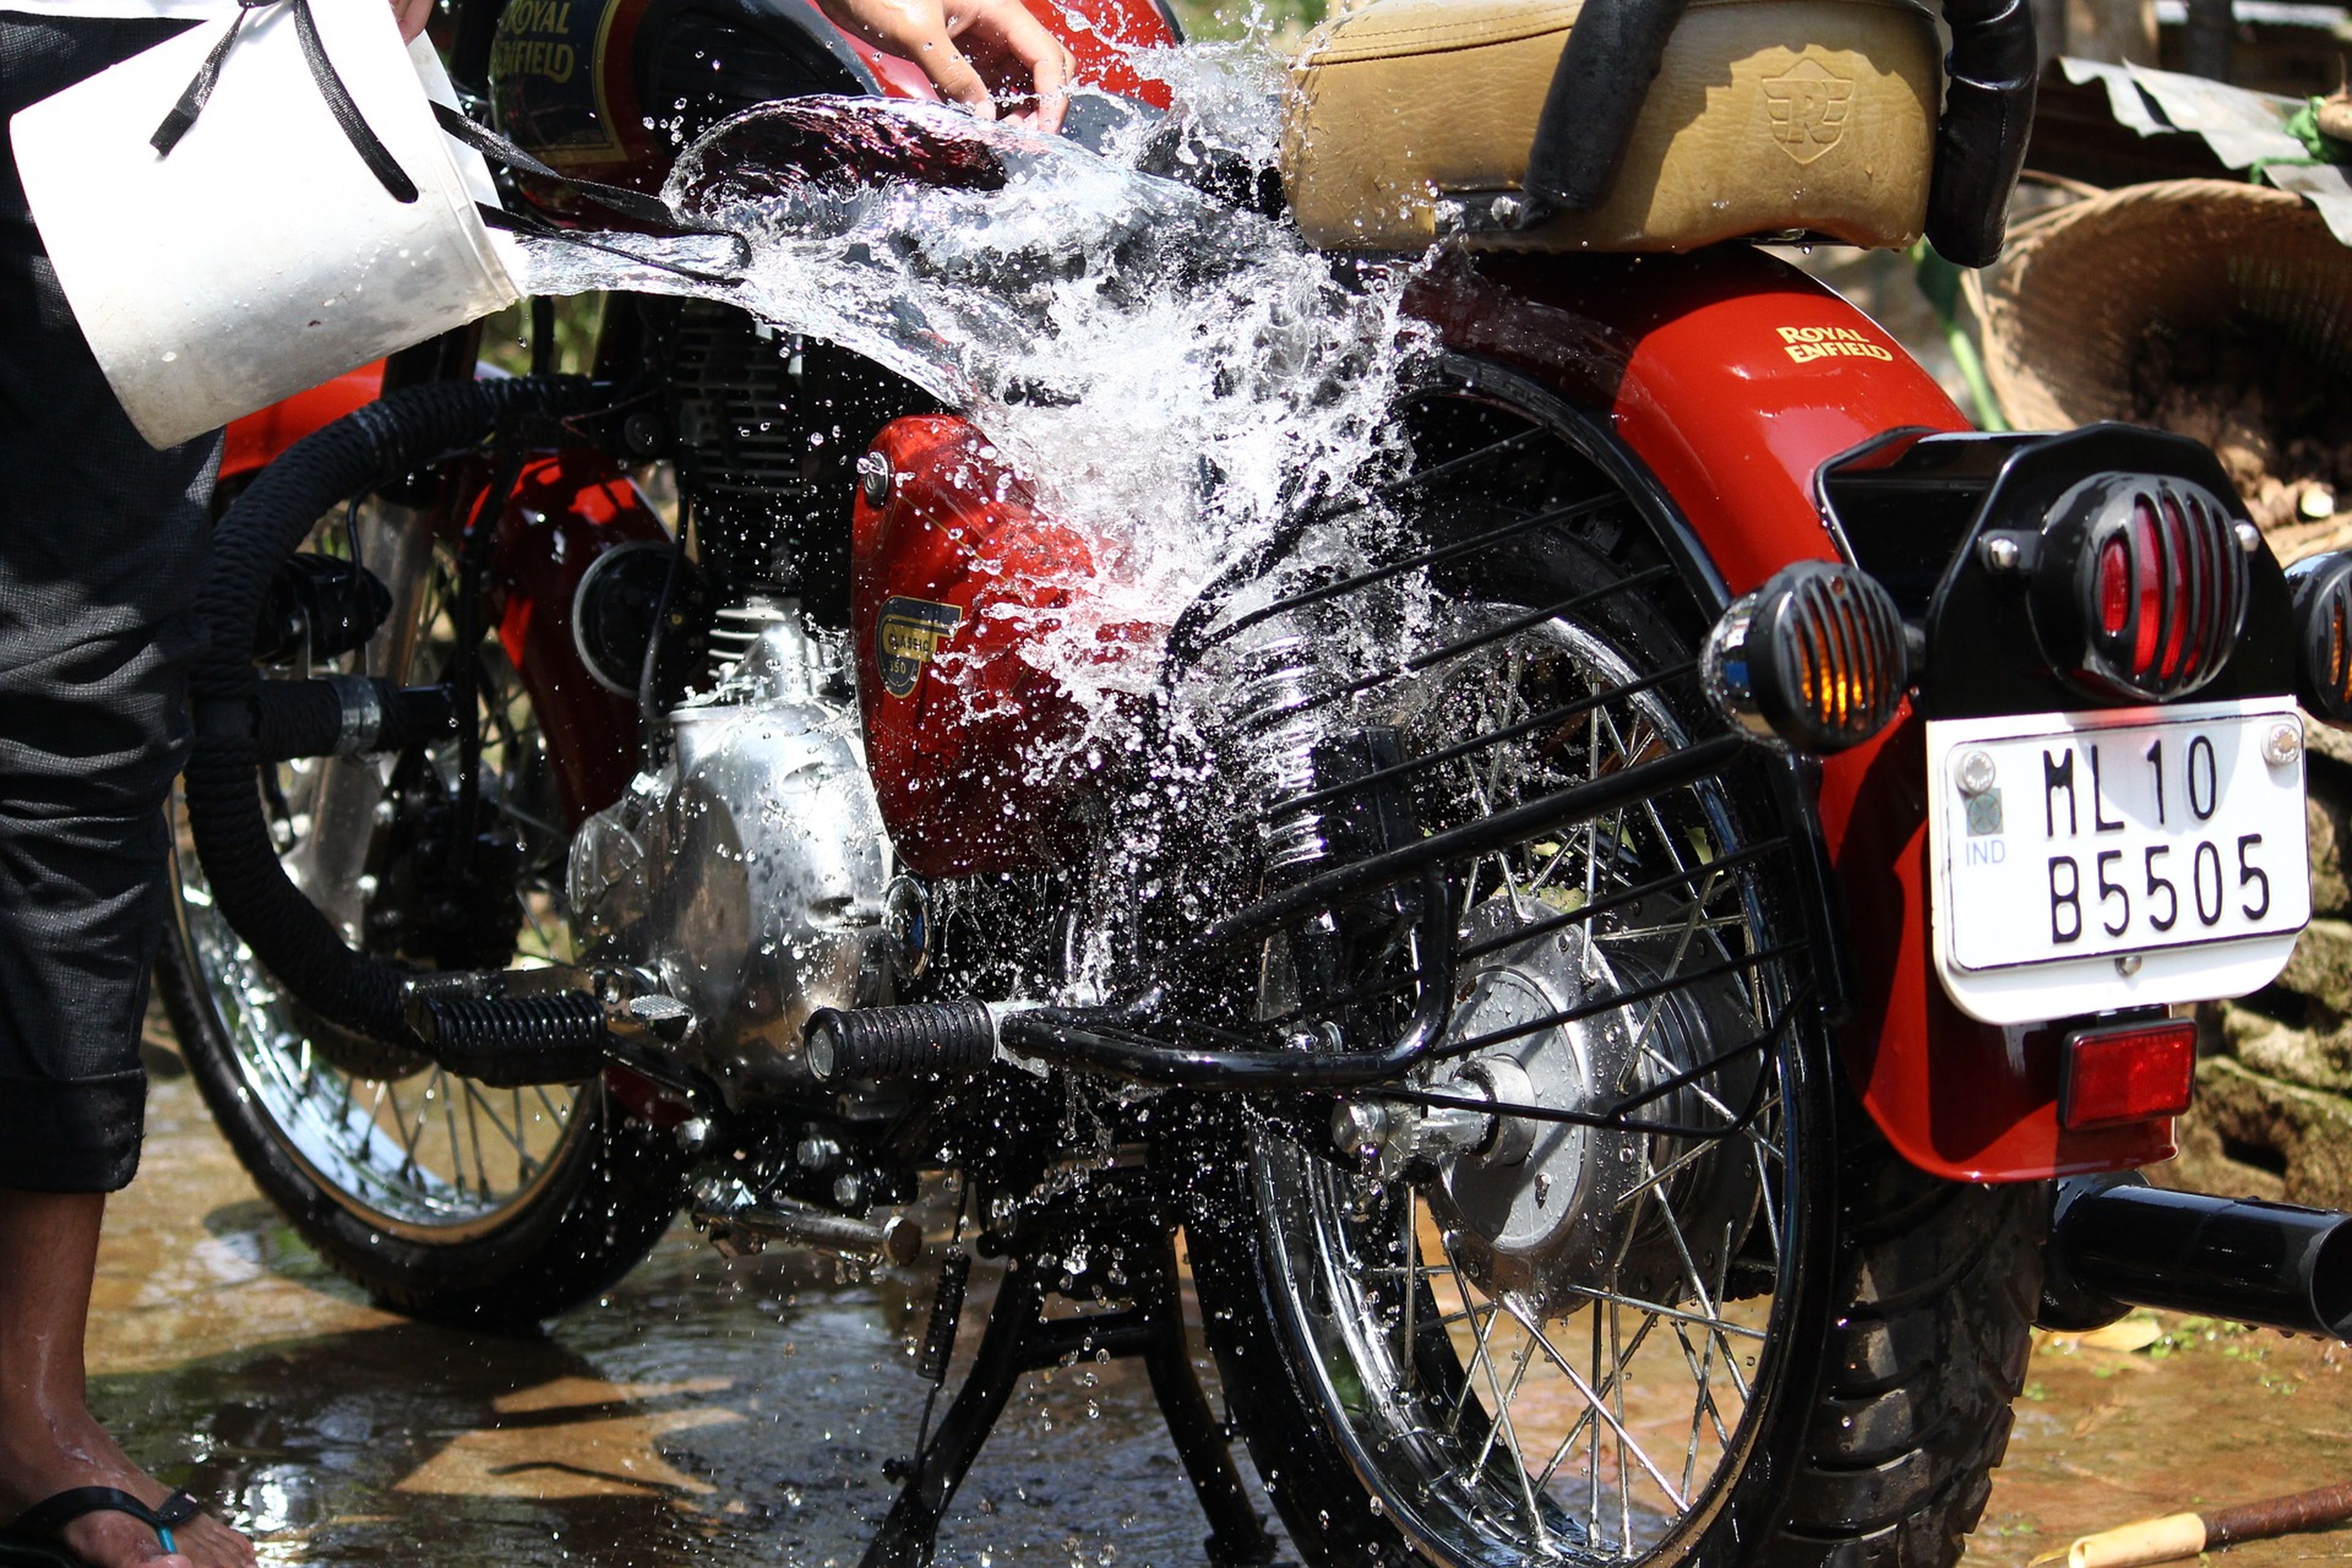 MADDOX DETAIL - MOTORCYCLE DETAIL - Limpiador sin agua para